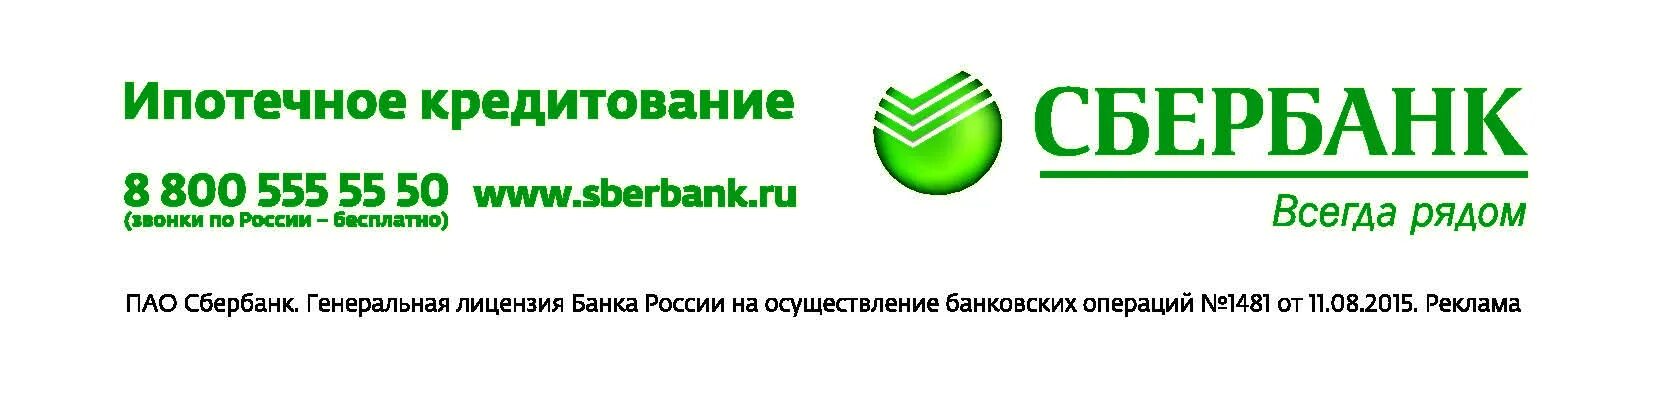 Ипотечное кредитование Сбербанк. Сбербанк логотип. Сбербанк России. Сбербанк всегда рядом.